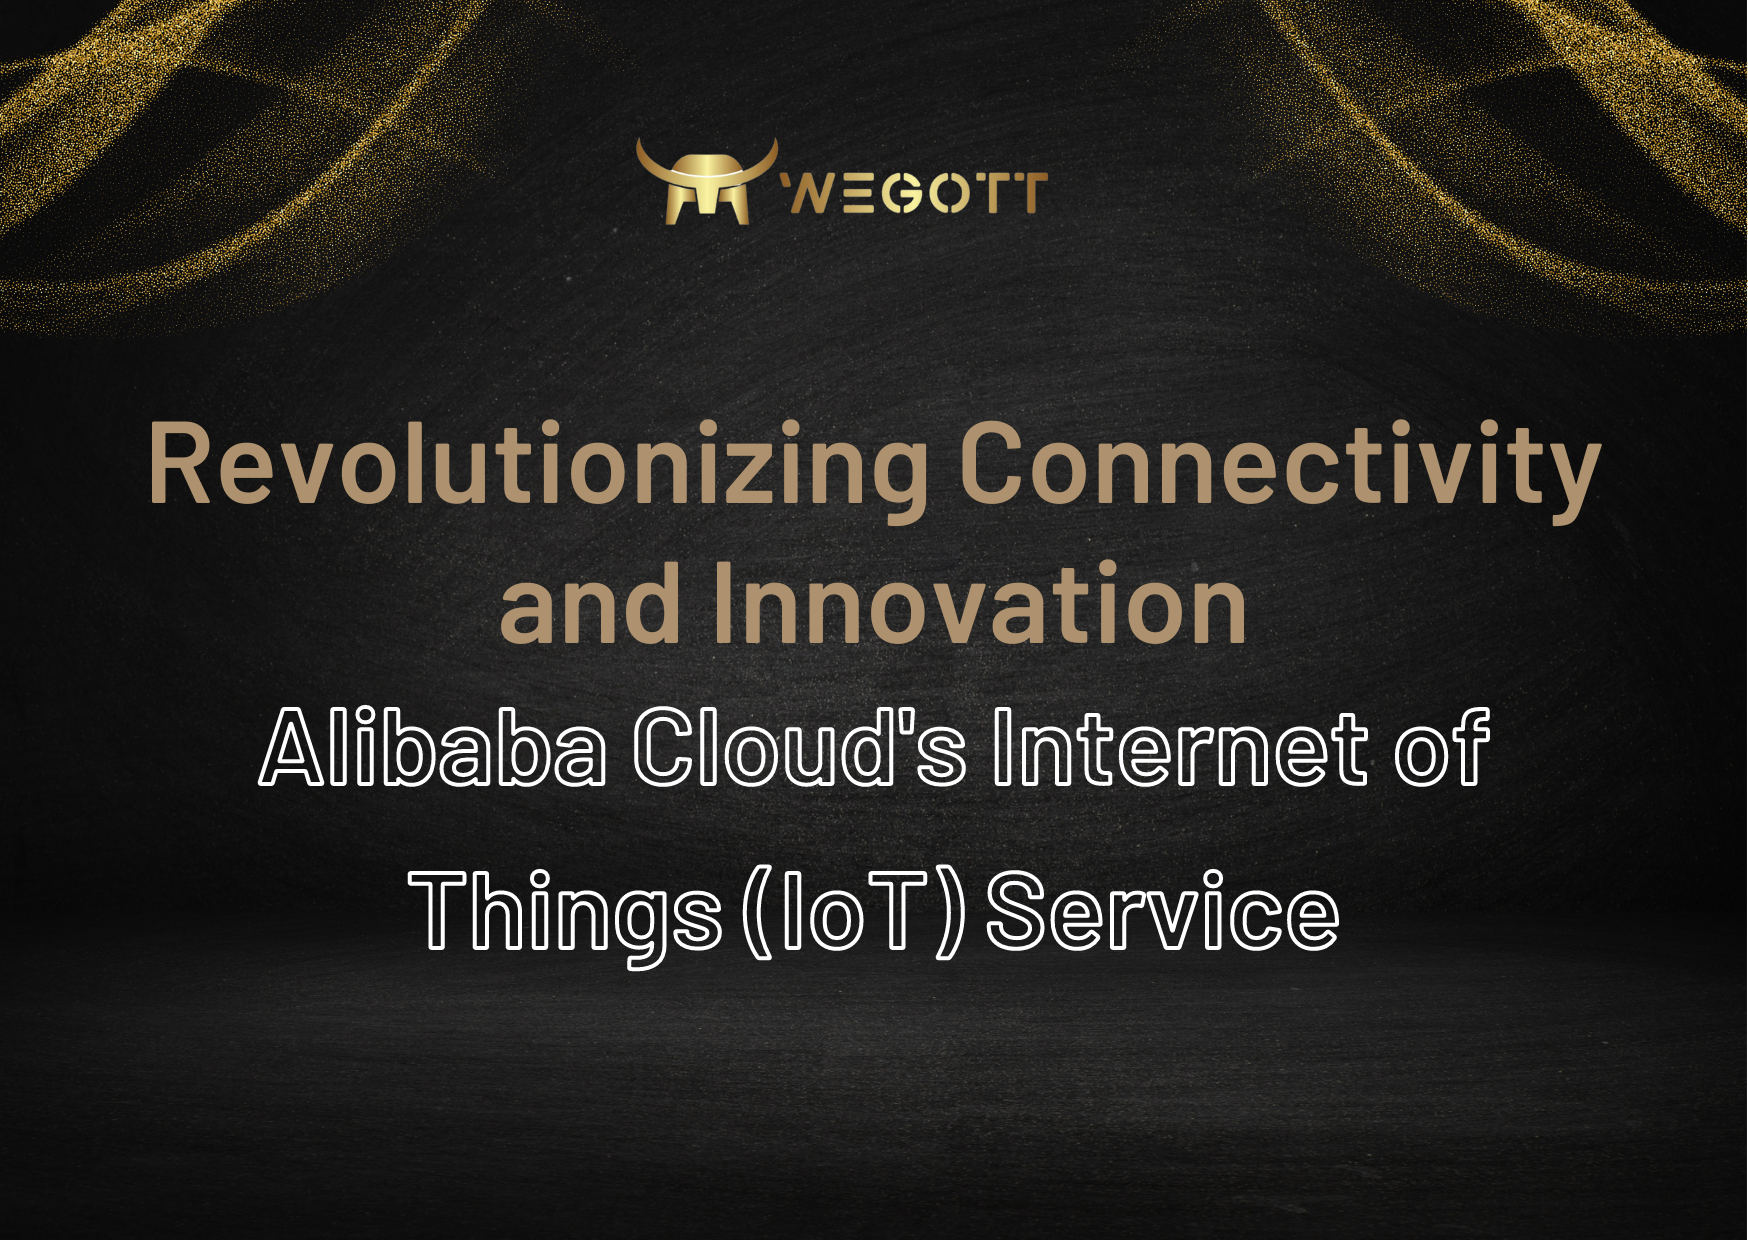 Internet of Things Alibaba Cloud